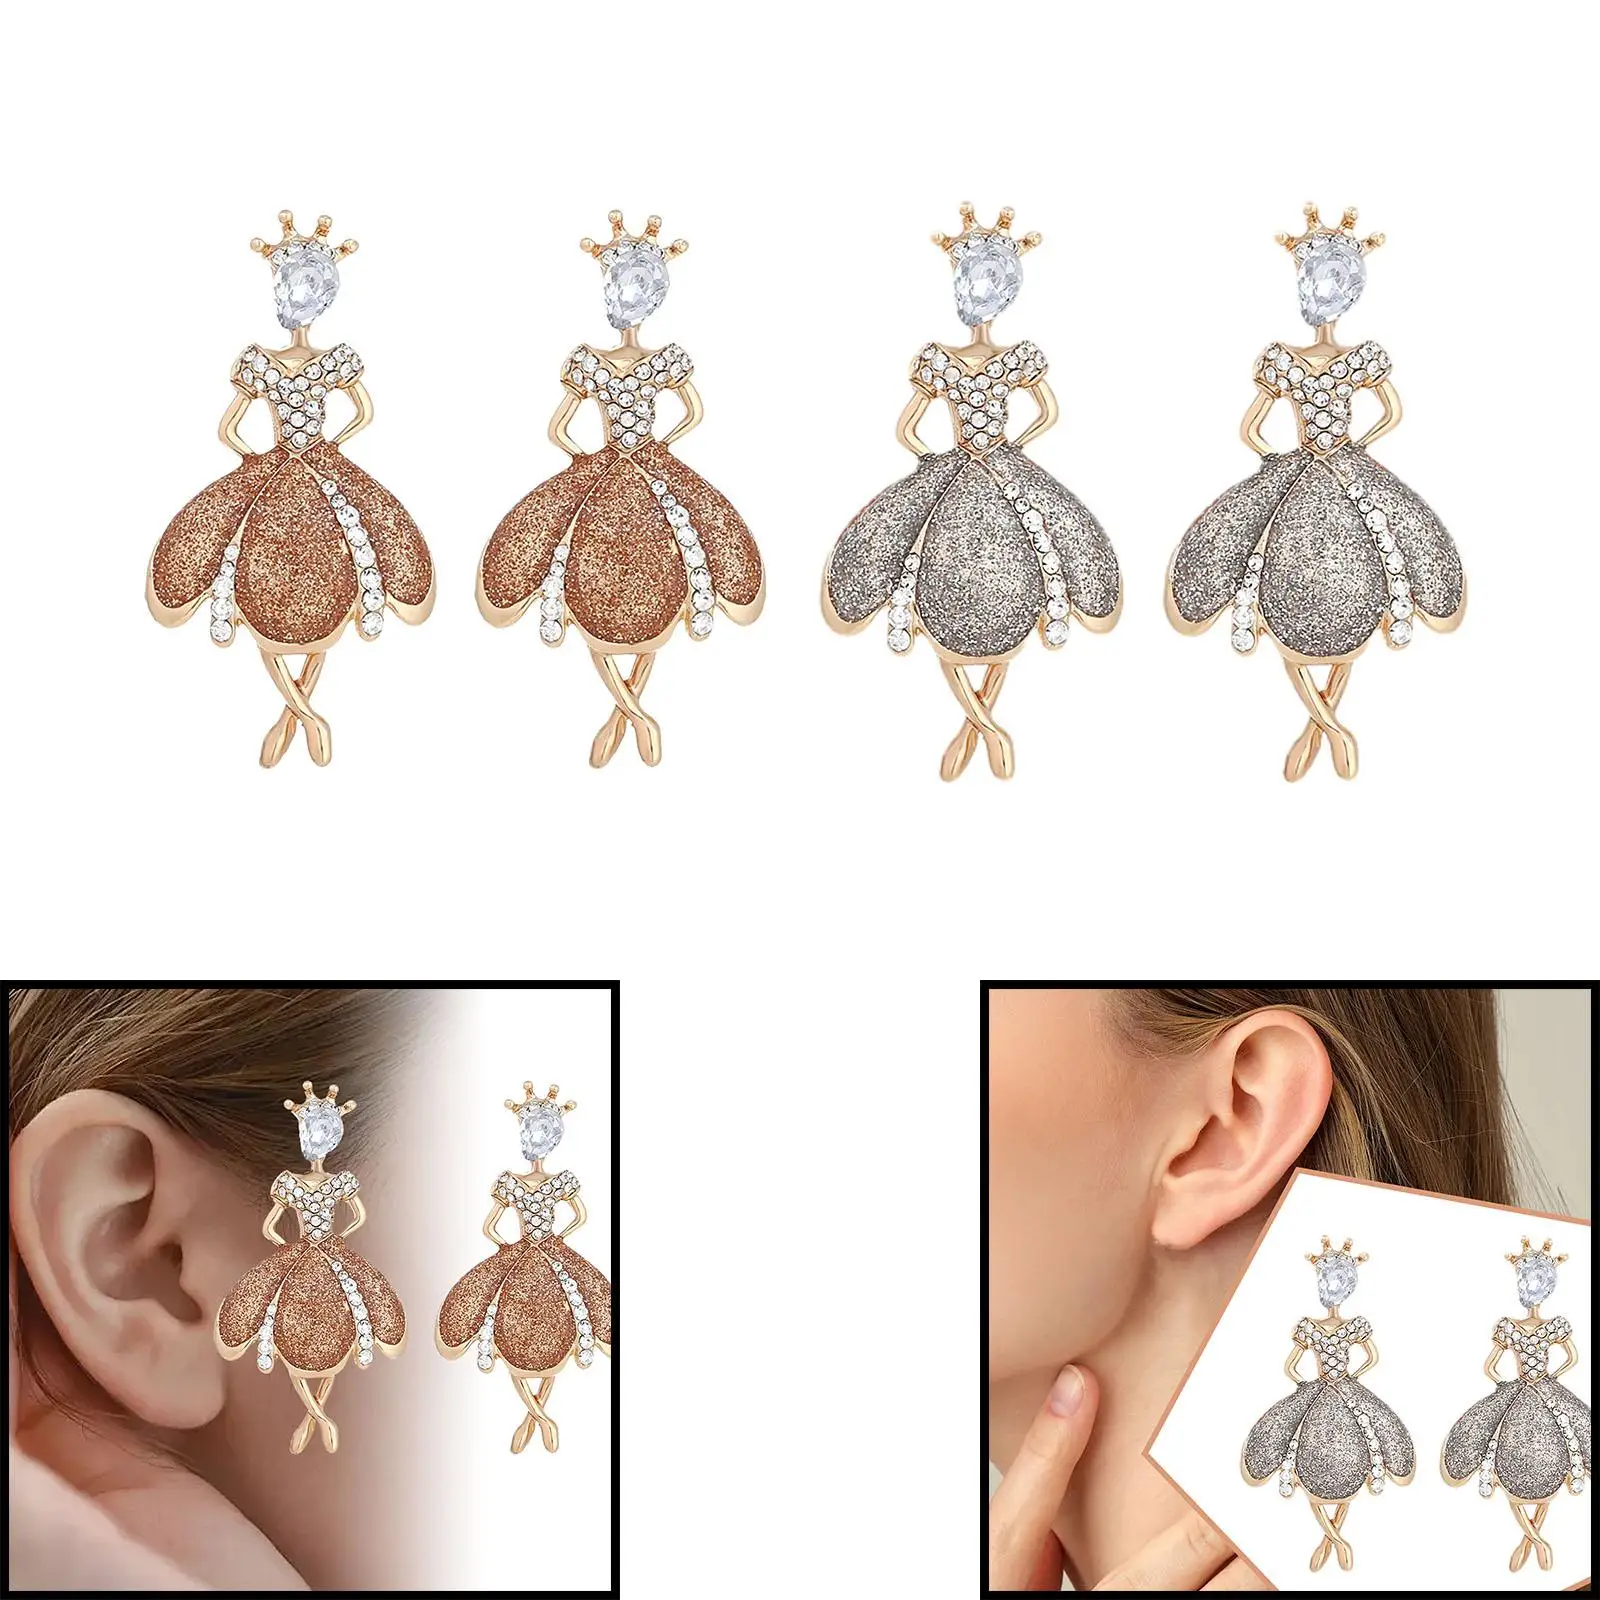 Mothers Day Gift Delicate Decoration Elegant Earrings for Girls Dangle Earrings for Birthday Festival Daily Wear Women Mom